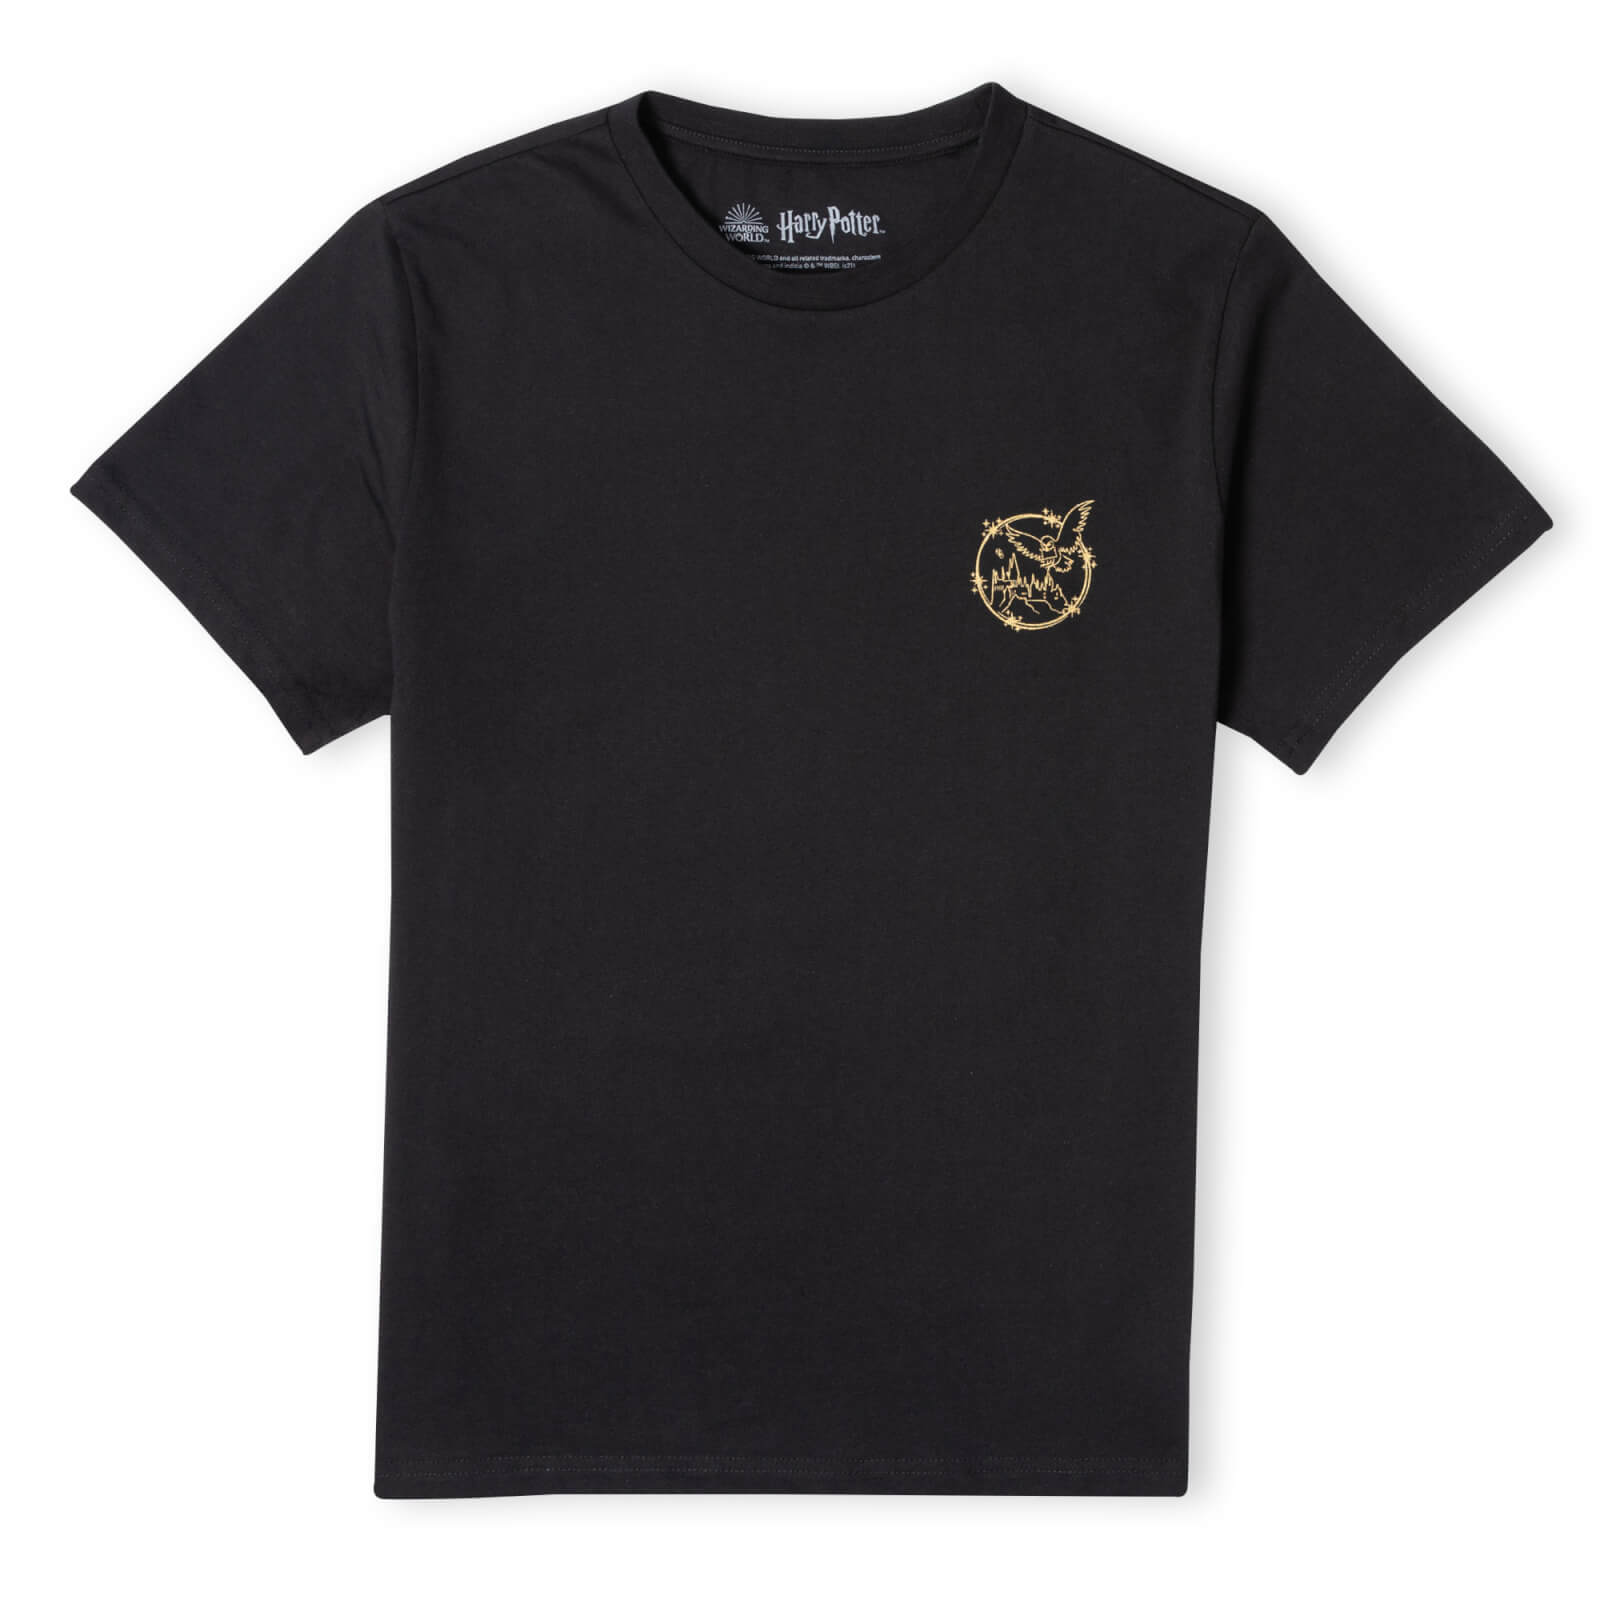 harry potter metallic pocket print men's t-shirt - black - m - nero